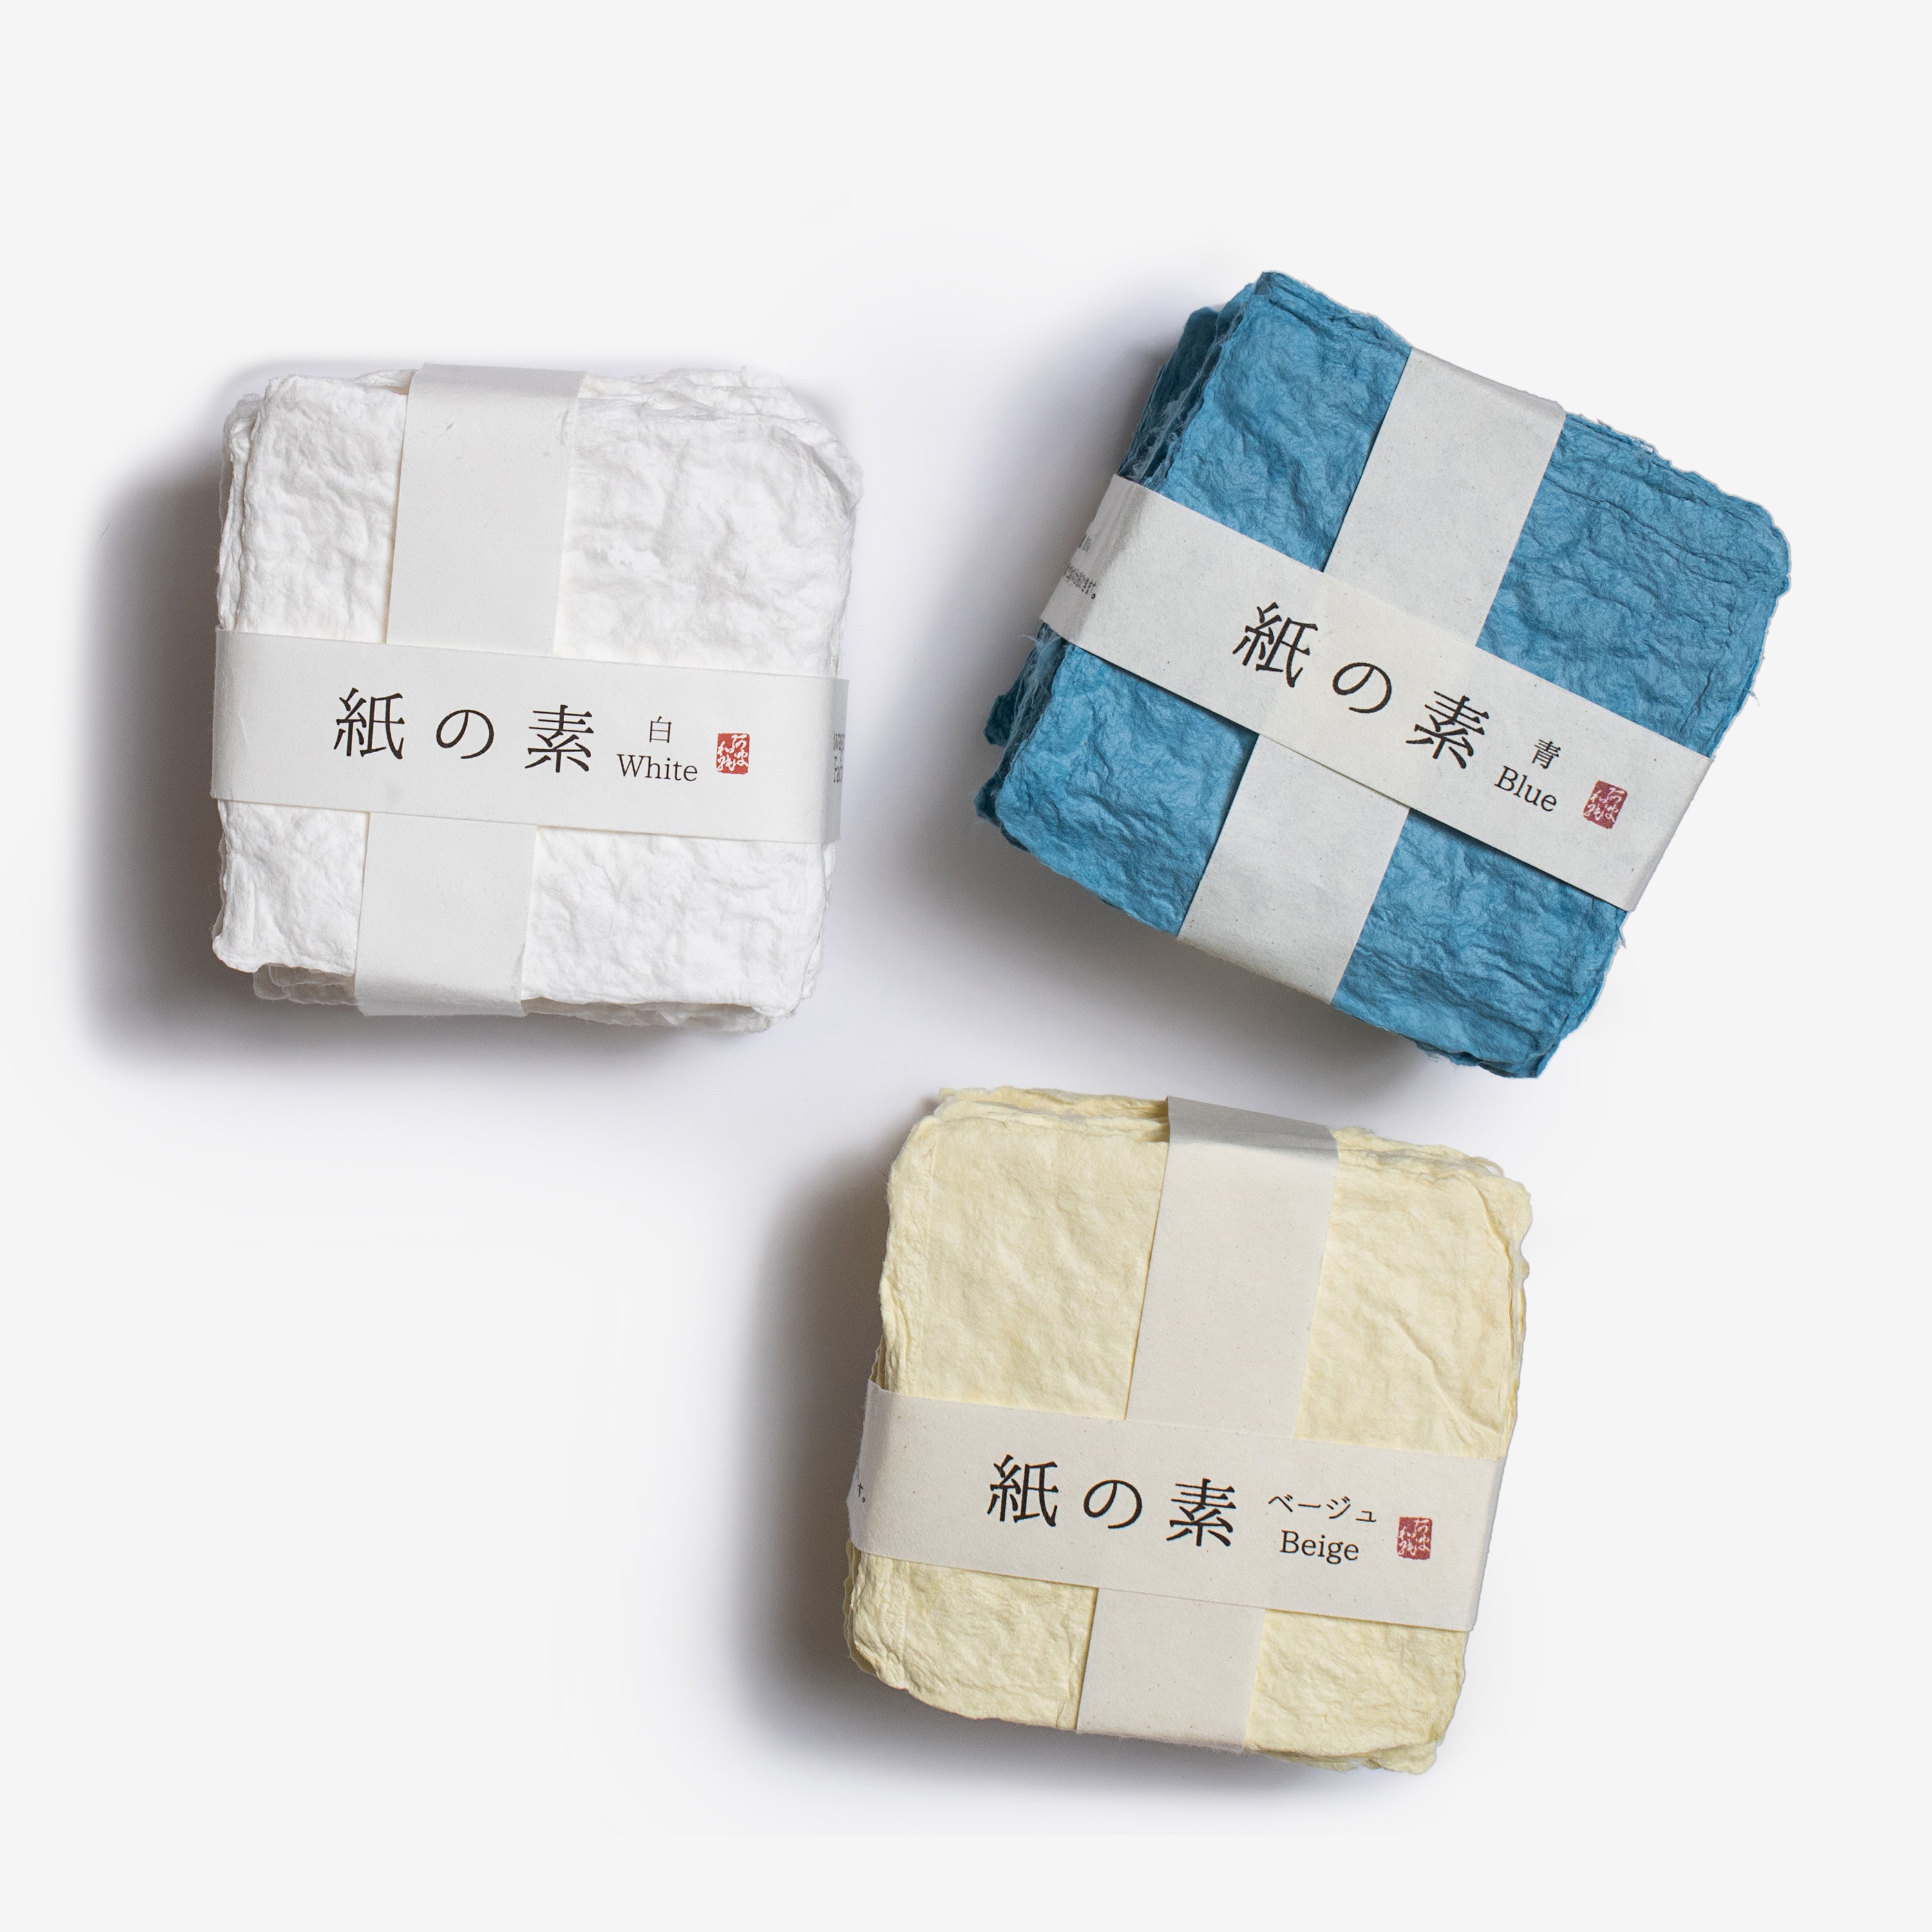 washi paper making kit